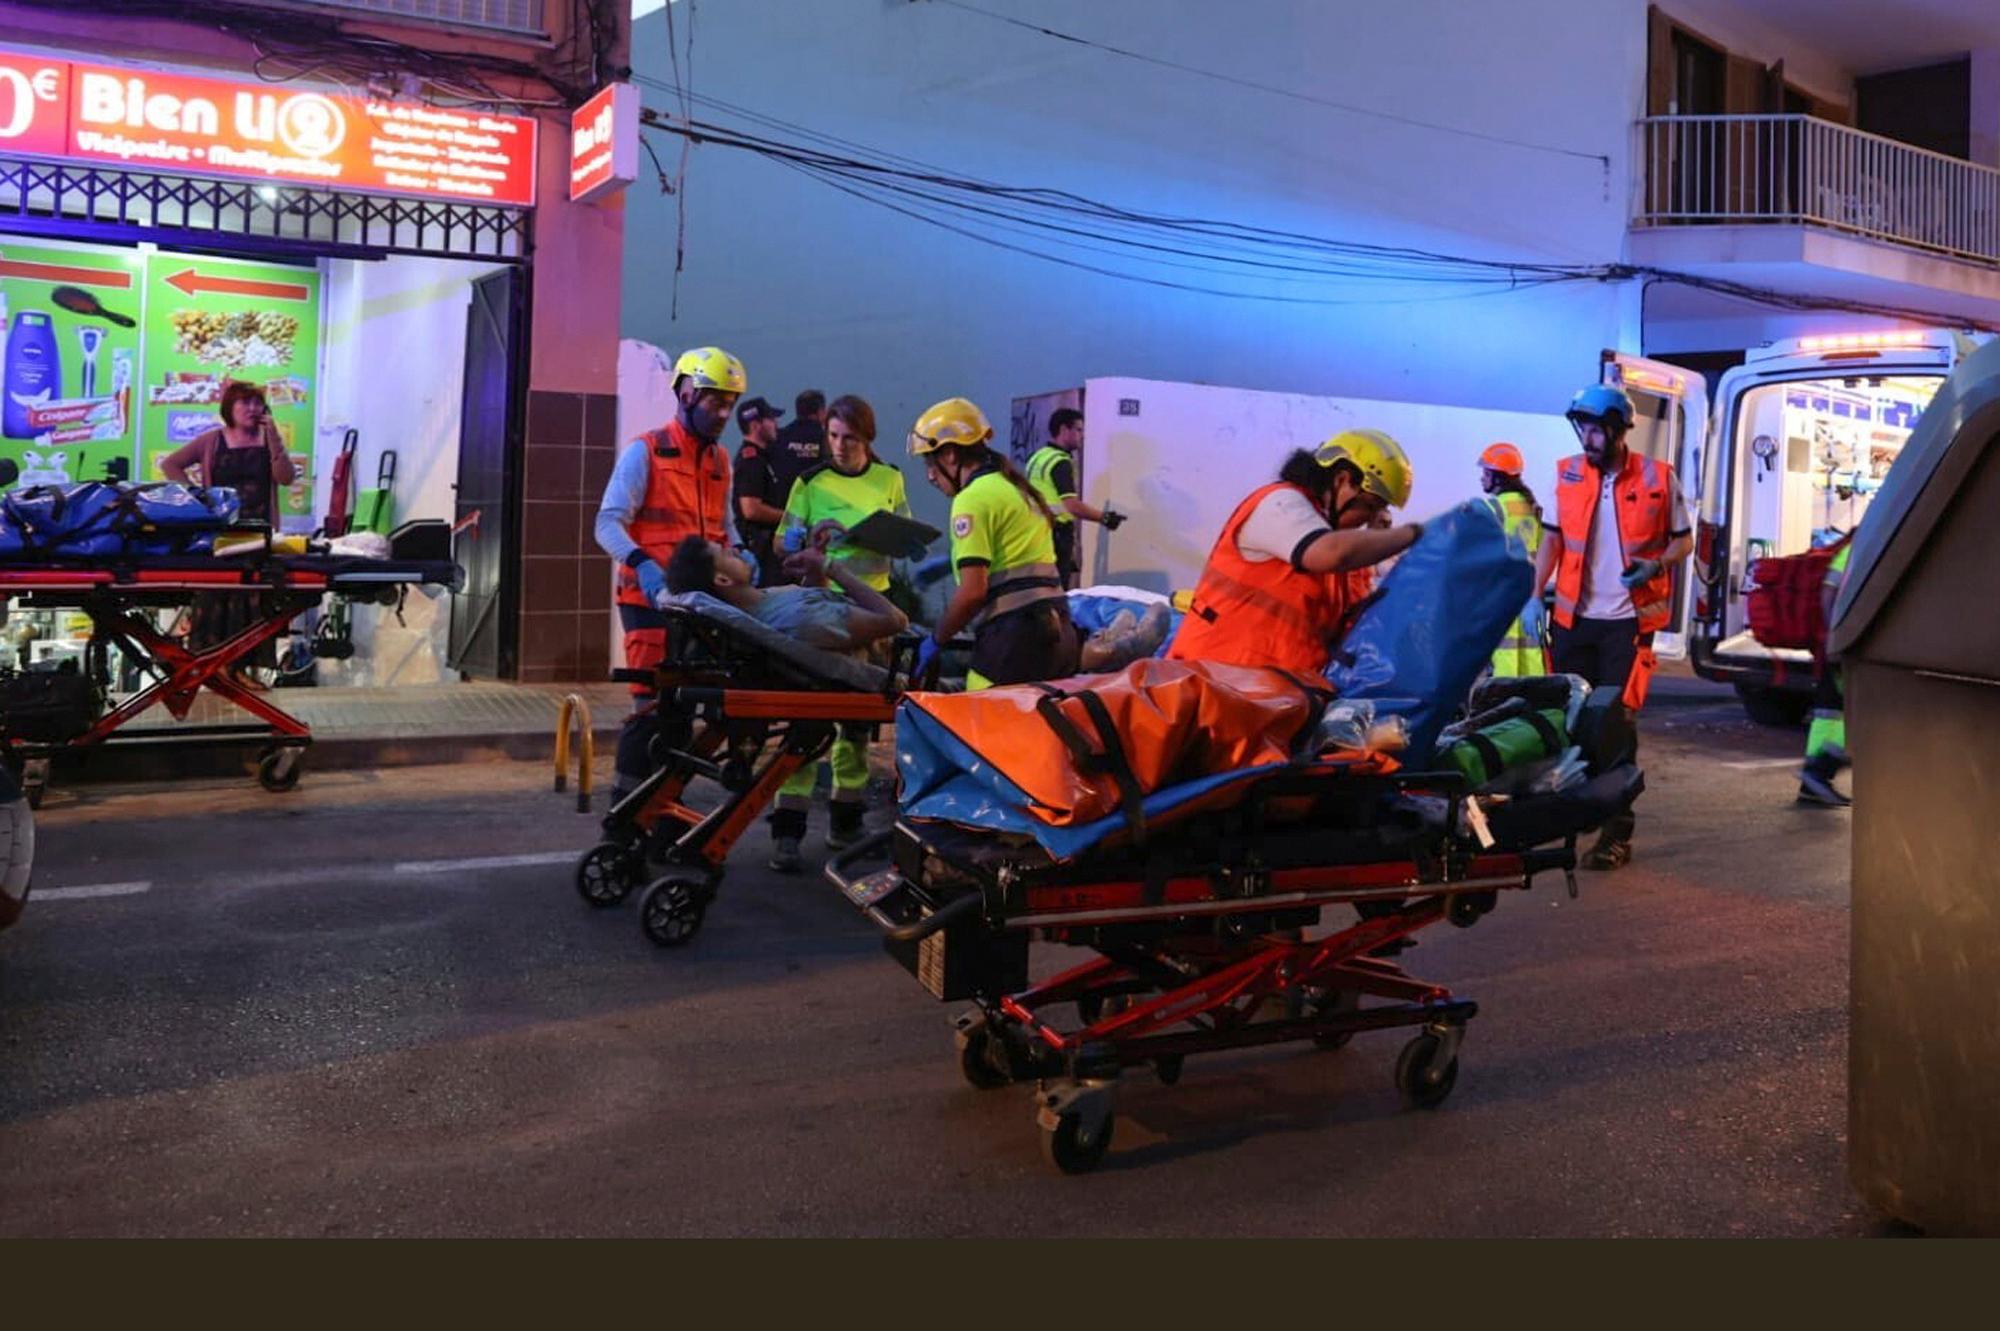 Räddningsarbete på olycksplatsen. Foto: Isaac Buj/Europa Press/AP/TT